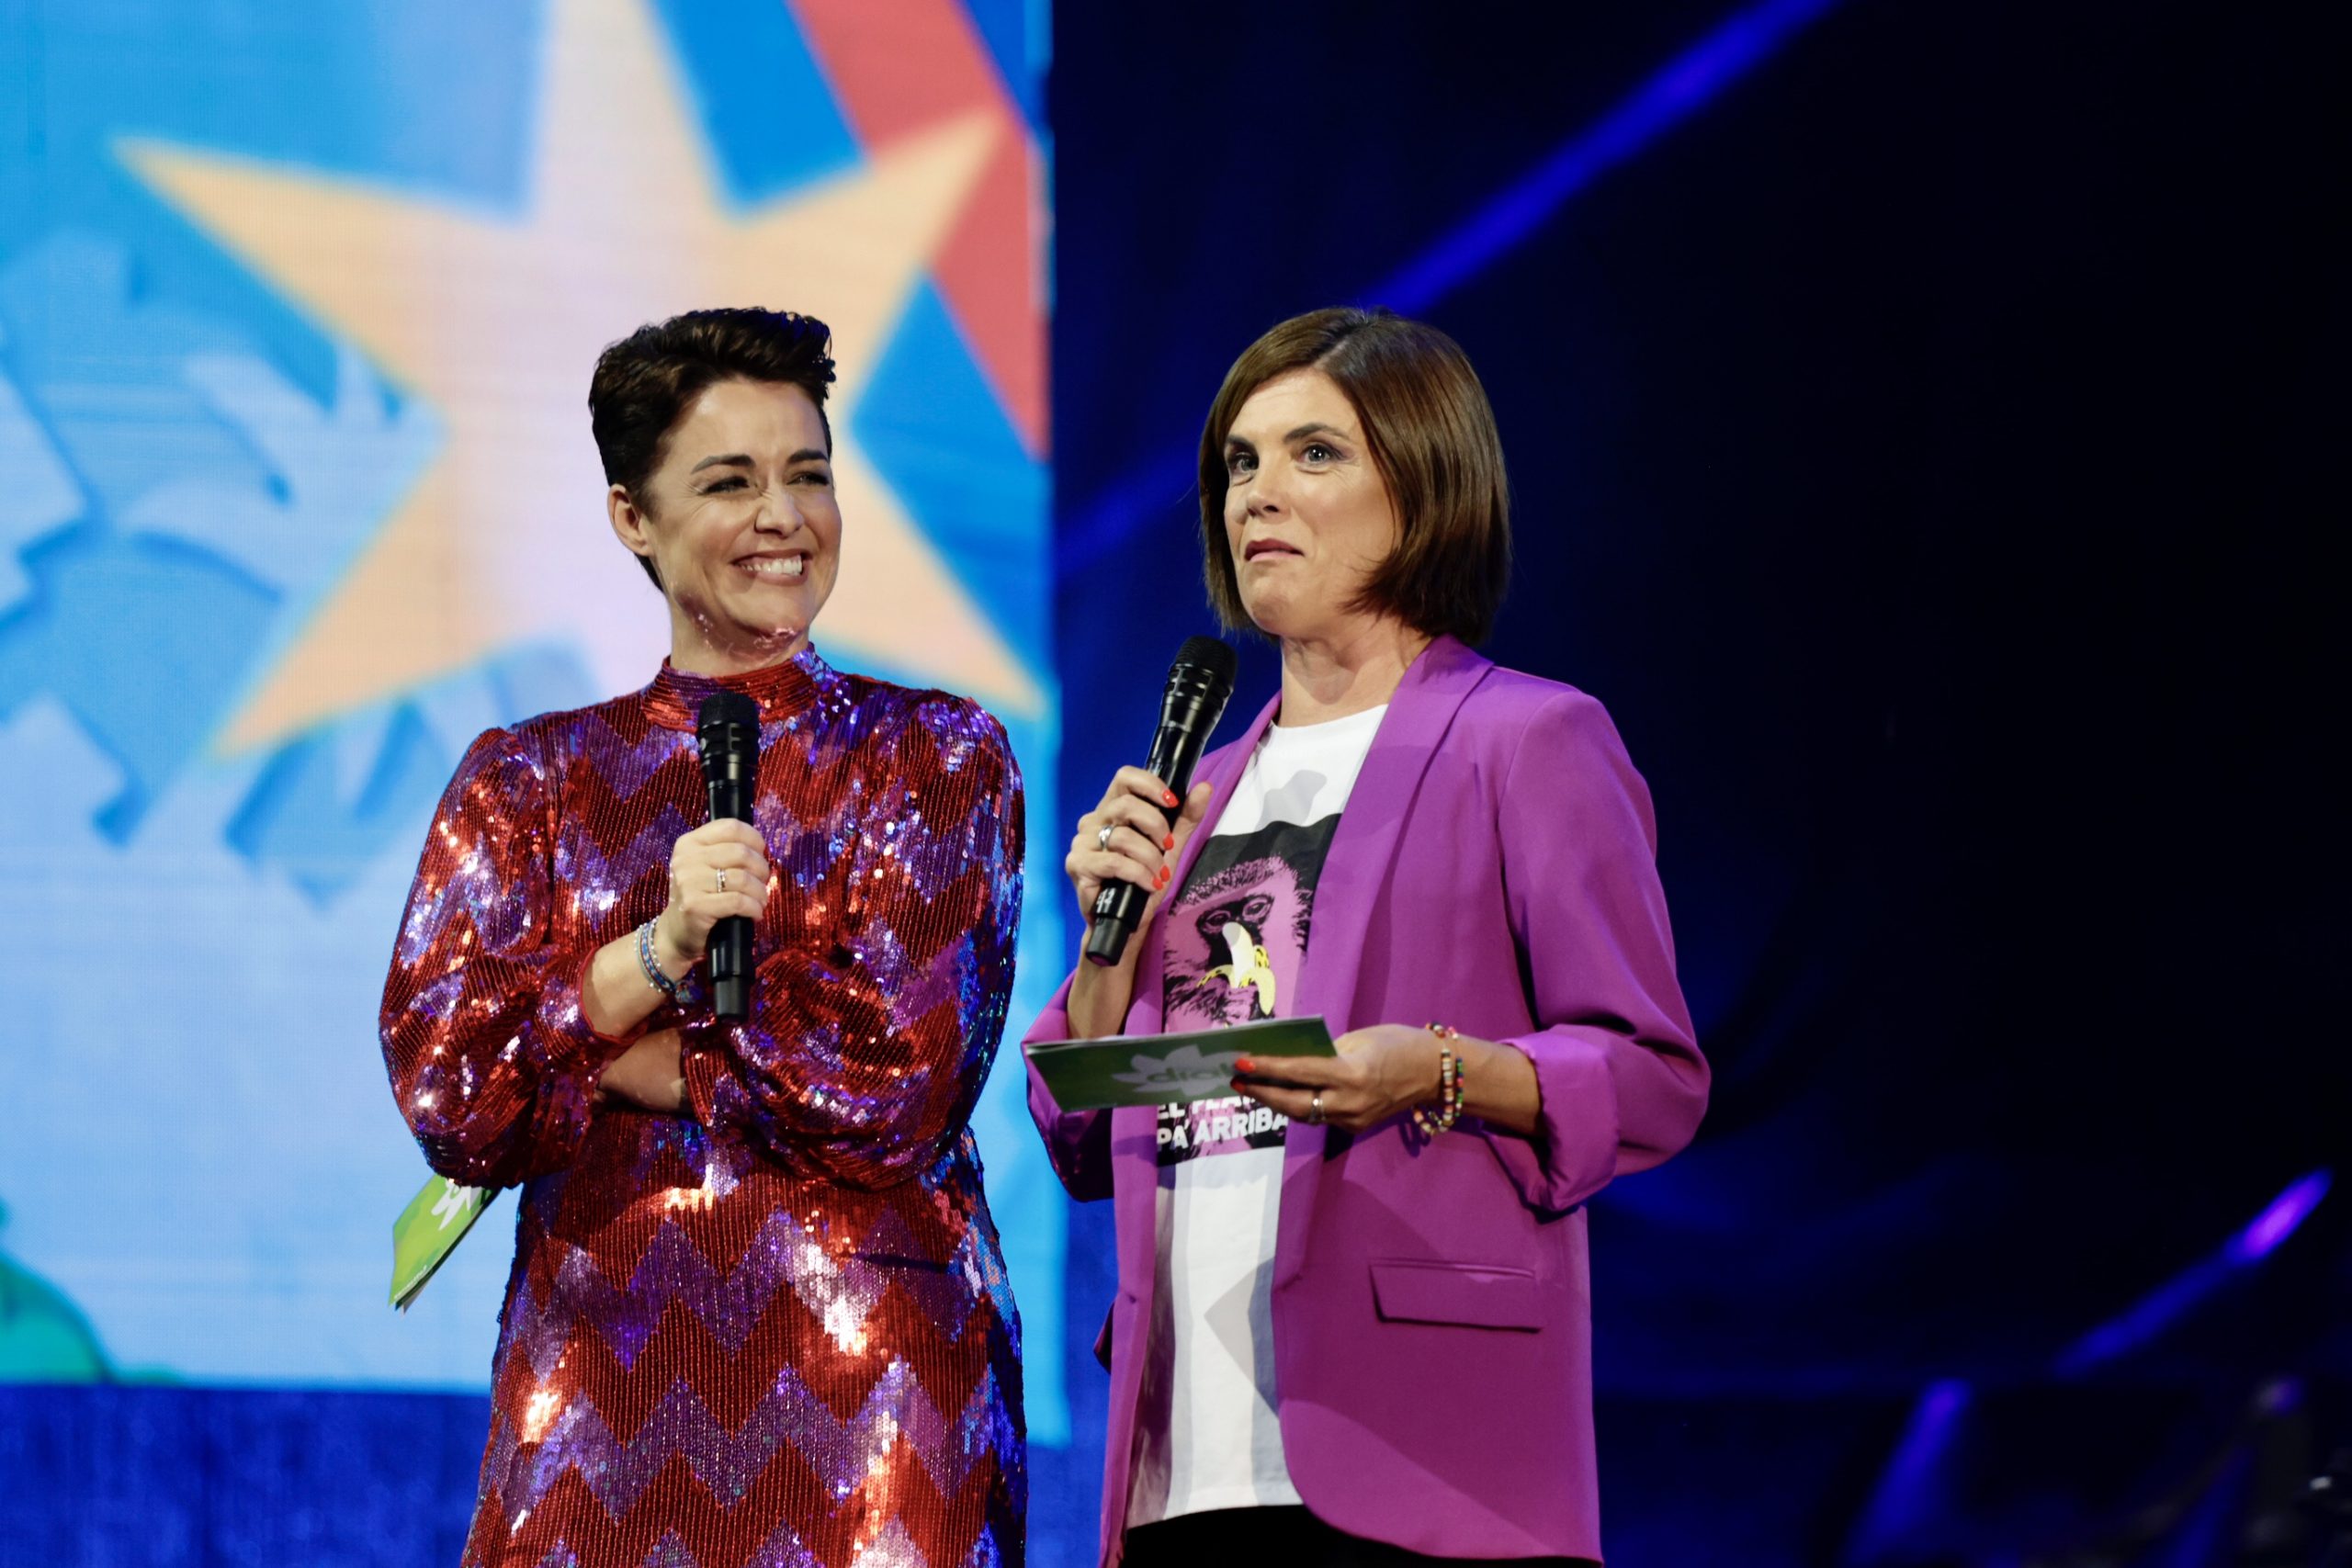 Samantar Villar y Marta Solano, invitadas a la gala de los premios de Cadena Dial.